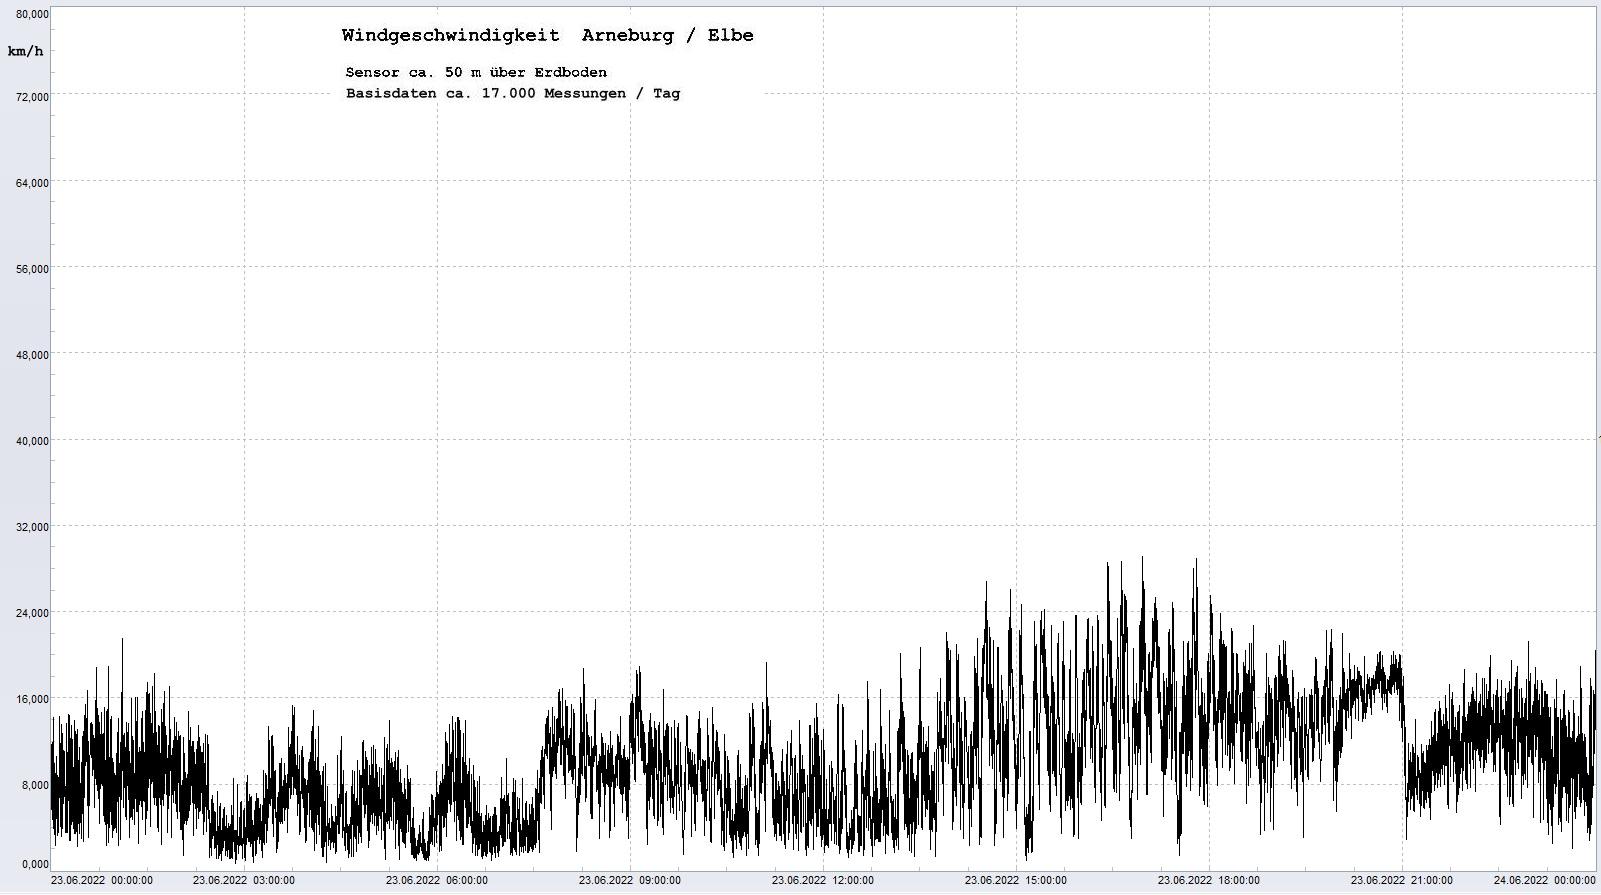 Arneburg Tages-Diagramm Winddaten, 23.06.2022
  Diagramm, Sensor auf Gebude, ca. 50 m ber Erdboden, Basis: 5s-Aufzeichnung